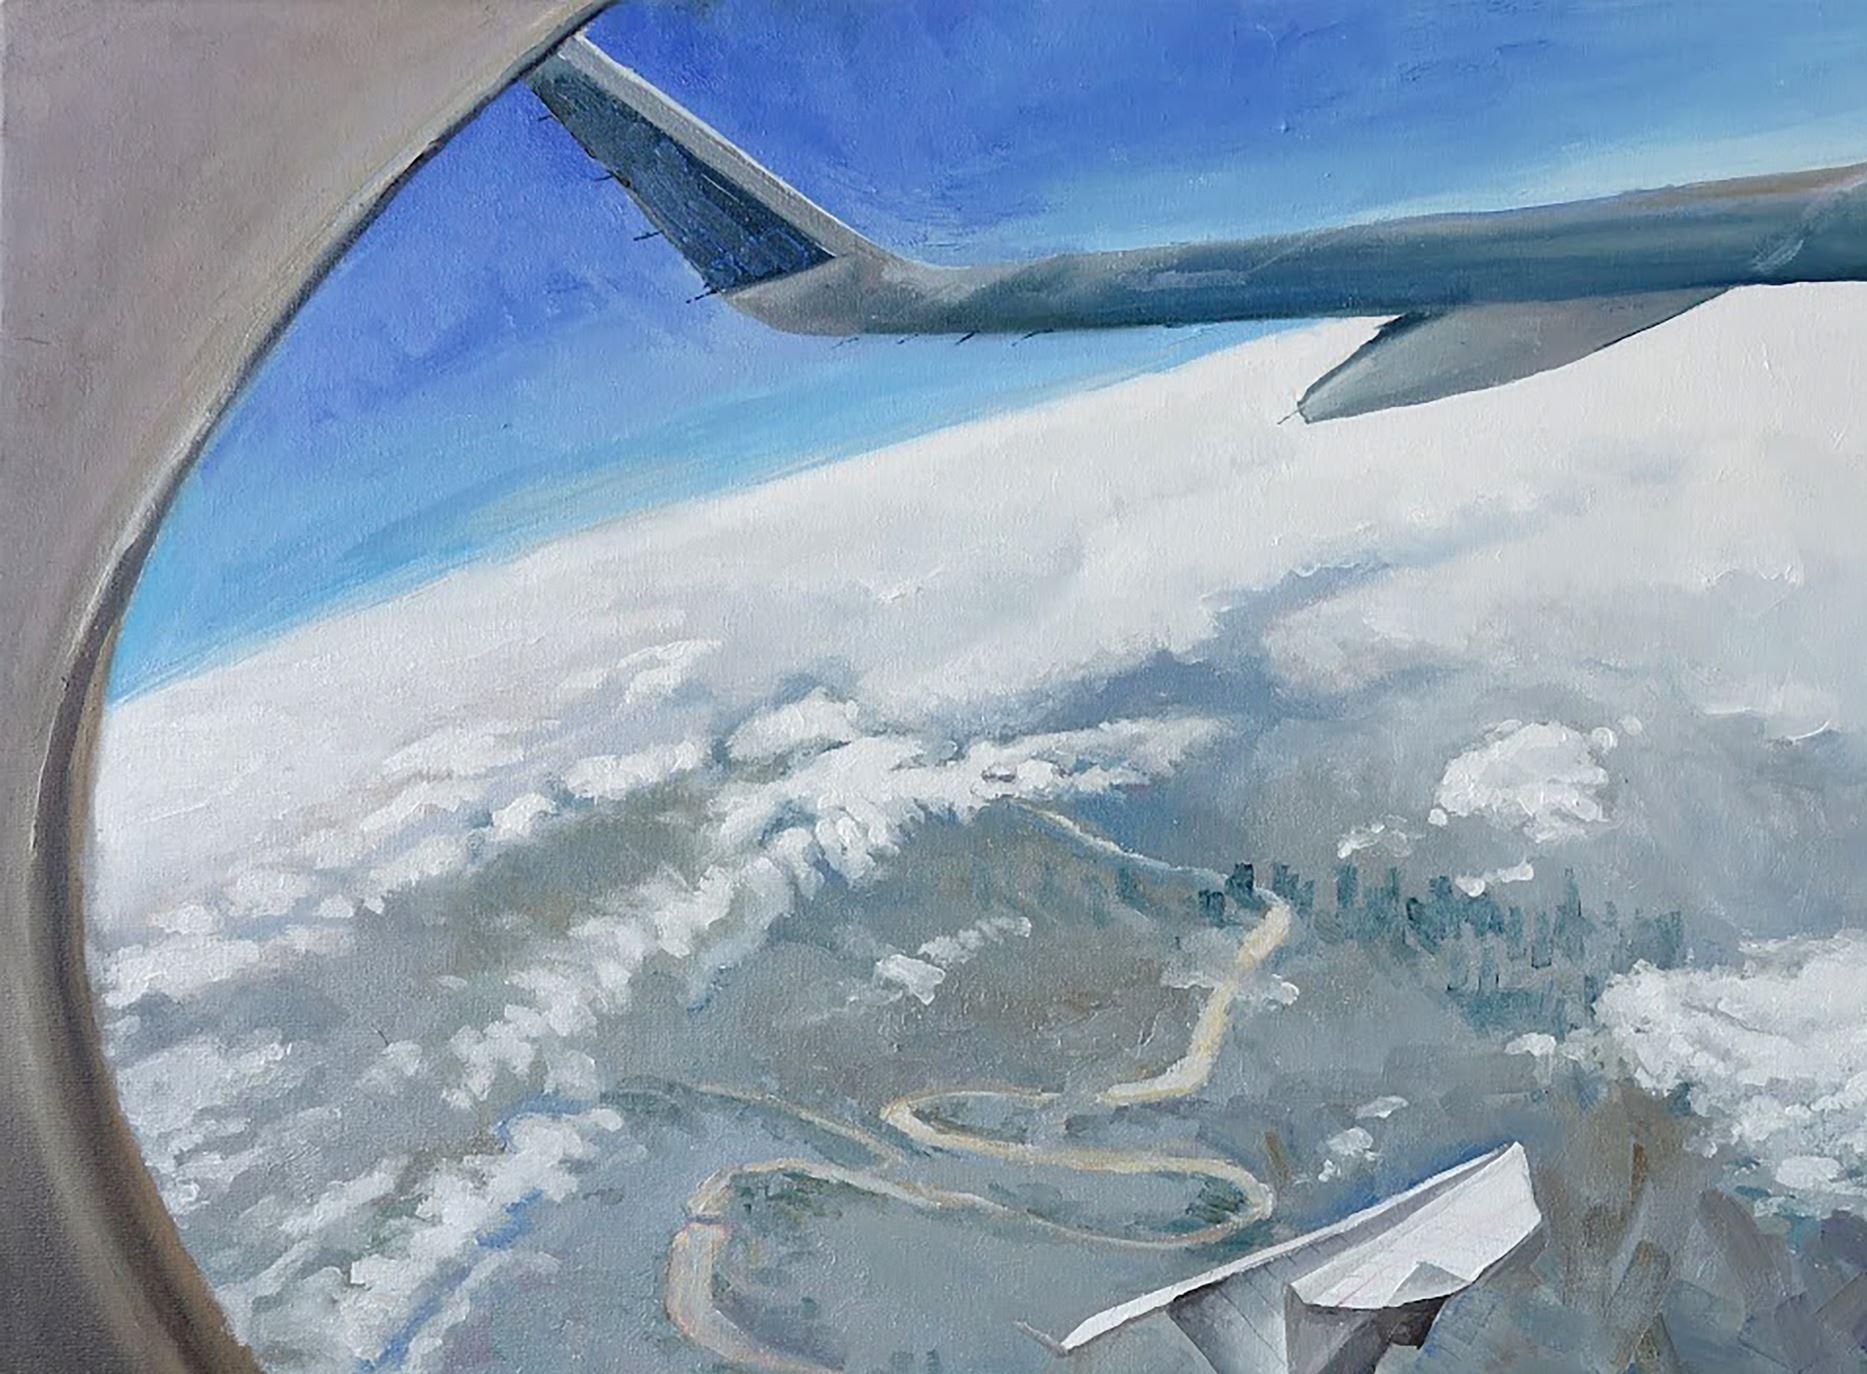 Künstler: Warwarow Anatoli Viktorowitsch
Titel: Flugzeuge leben im Flug
Größe: 27,5x35,5 Zoll, (70x90 cm)
Medium: Öl auf Leinwand
Handbemalt, original, einzigartig, 

